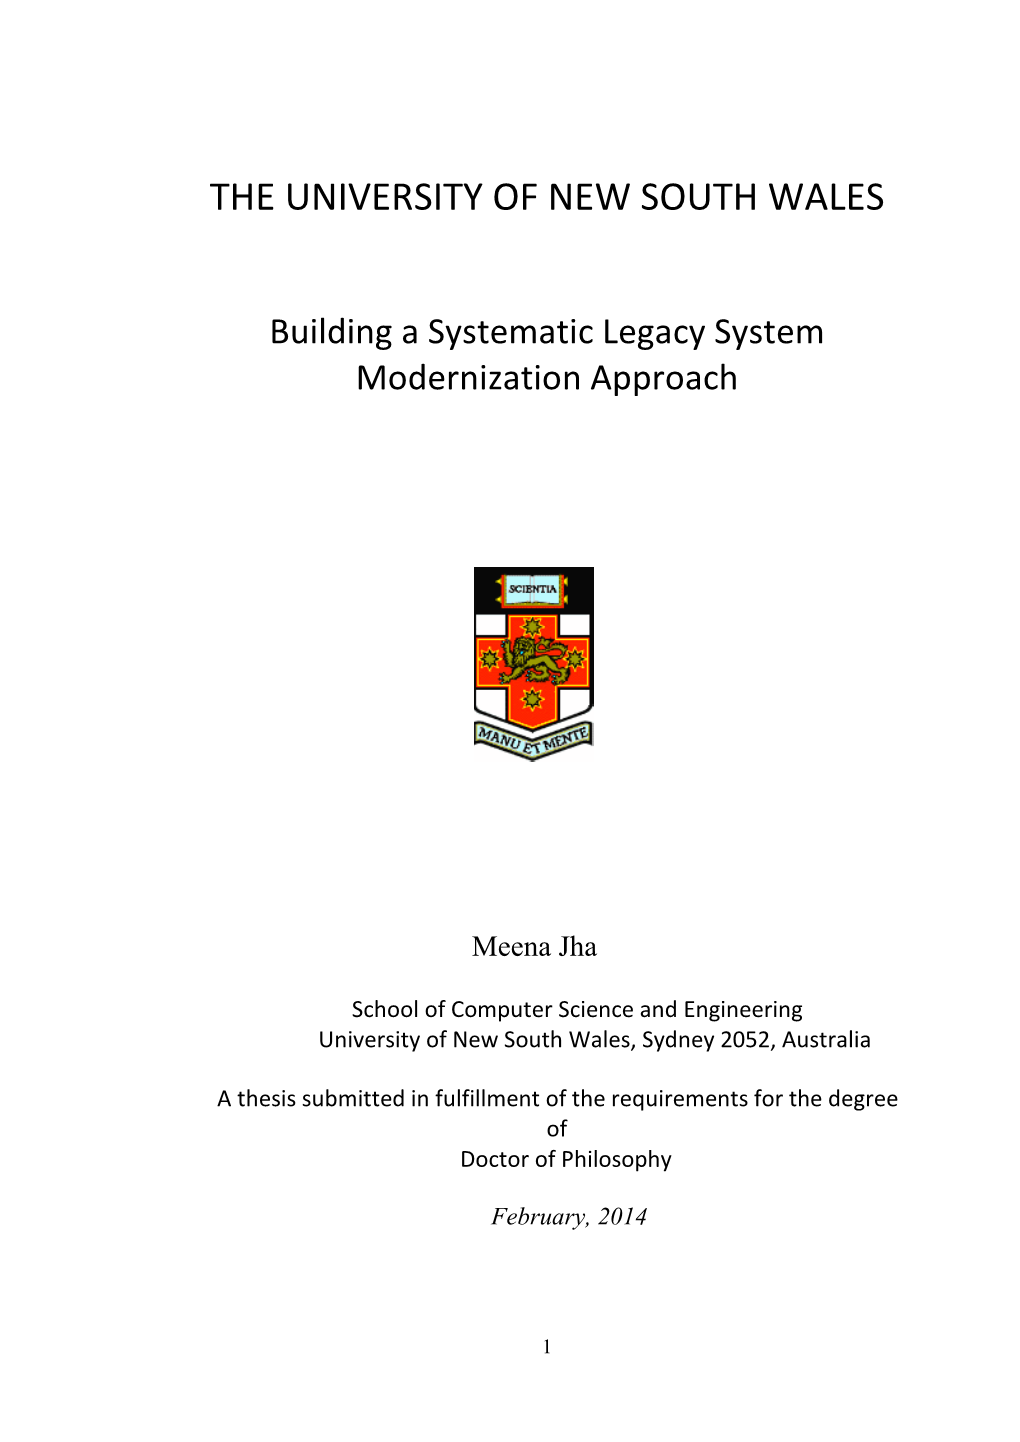 2.4 Legacy System Modernization